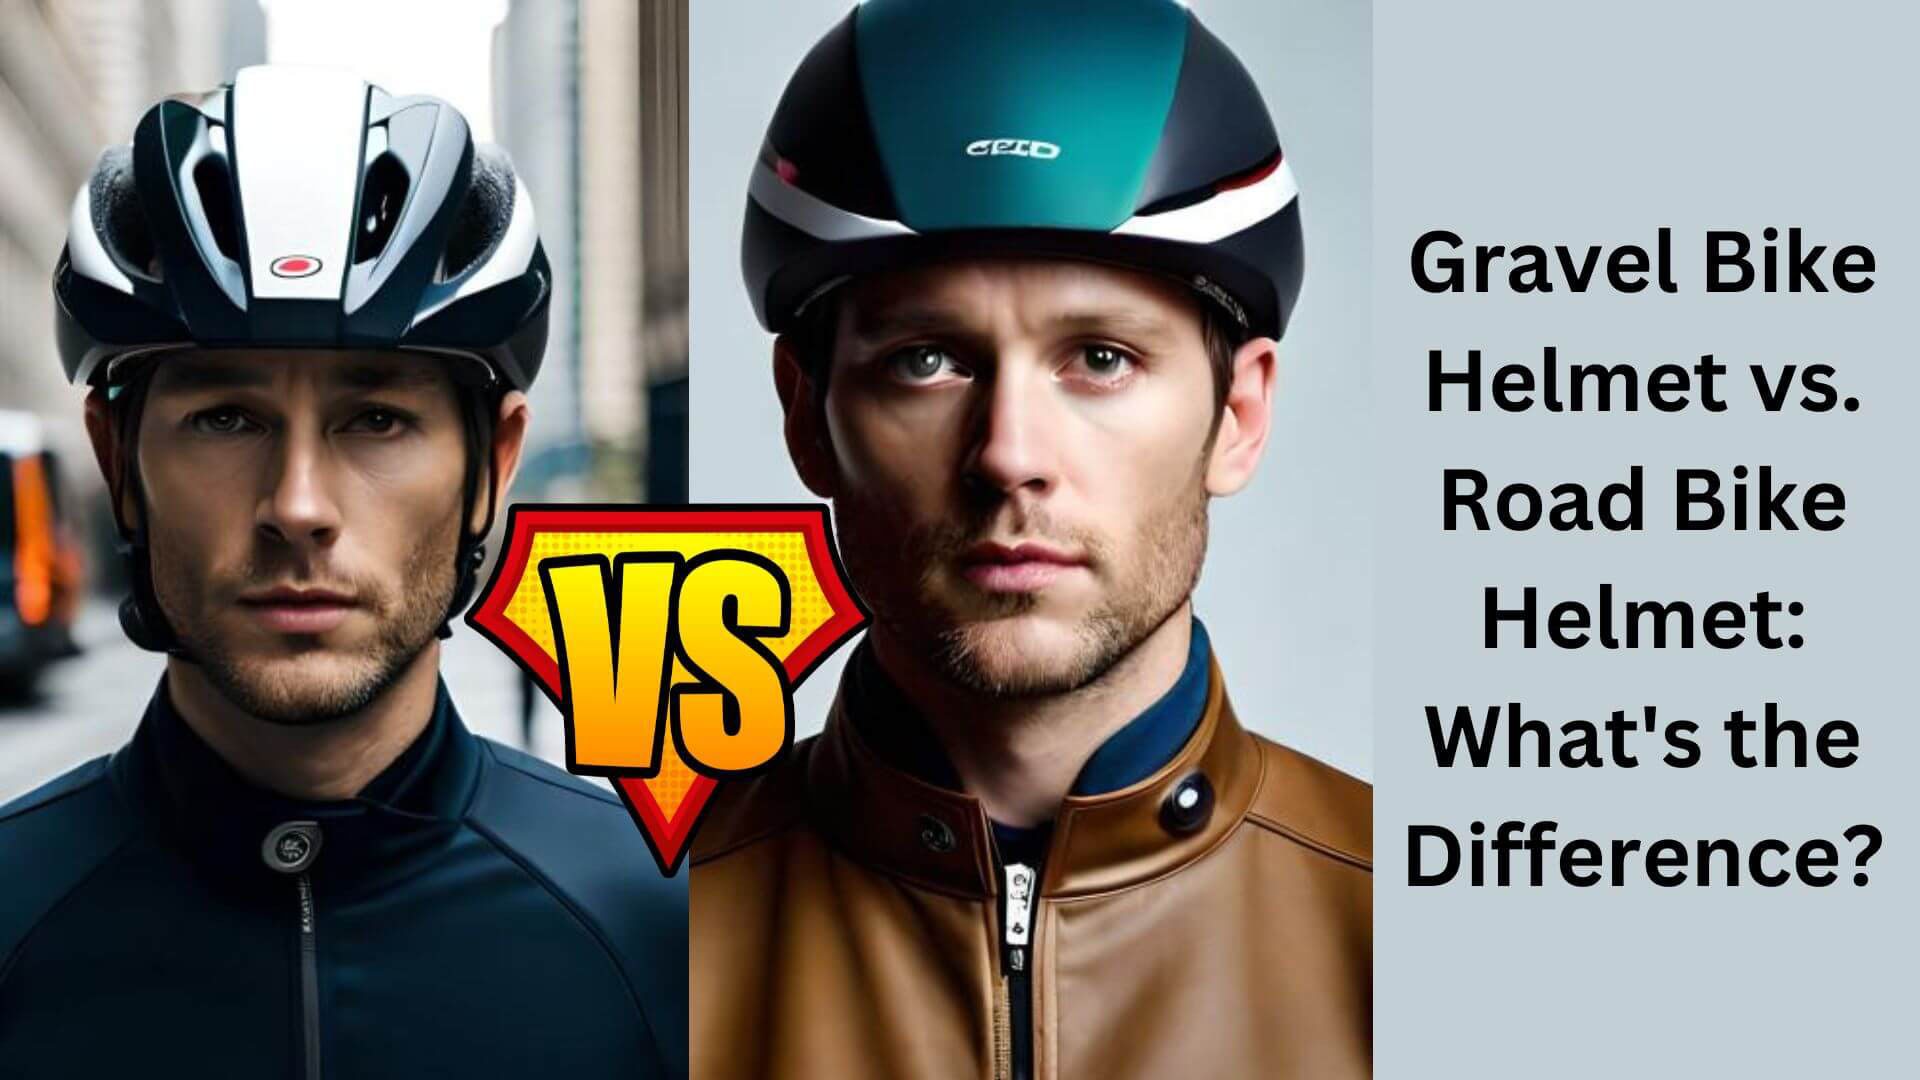 Gravel Bike Helmet vs. Road Bike Helmet: What's the Difference?